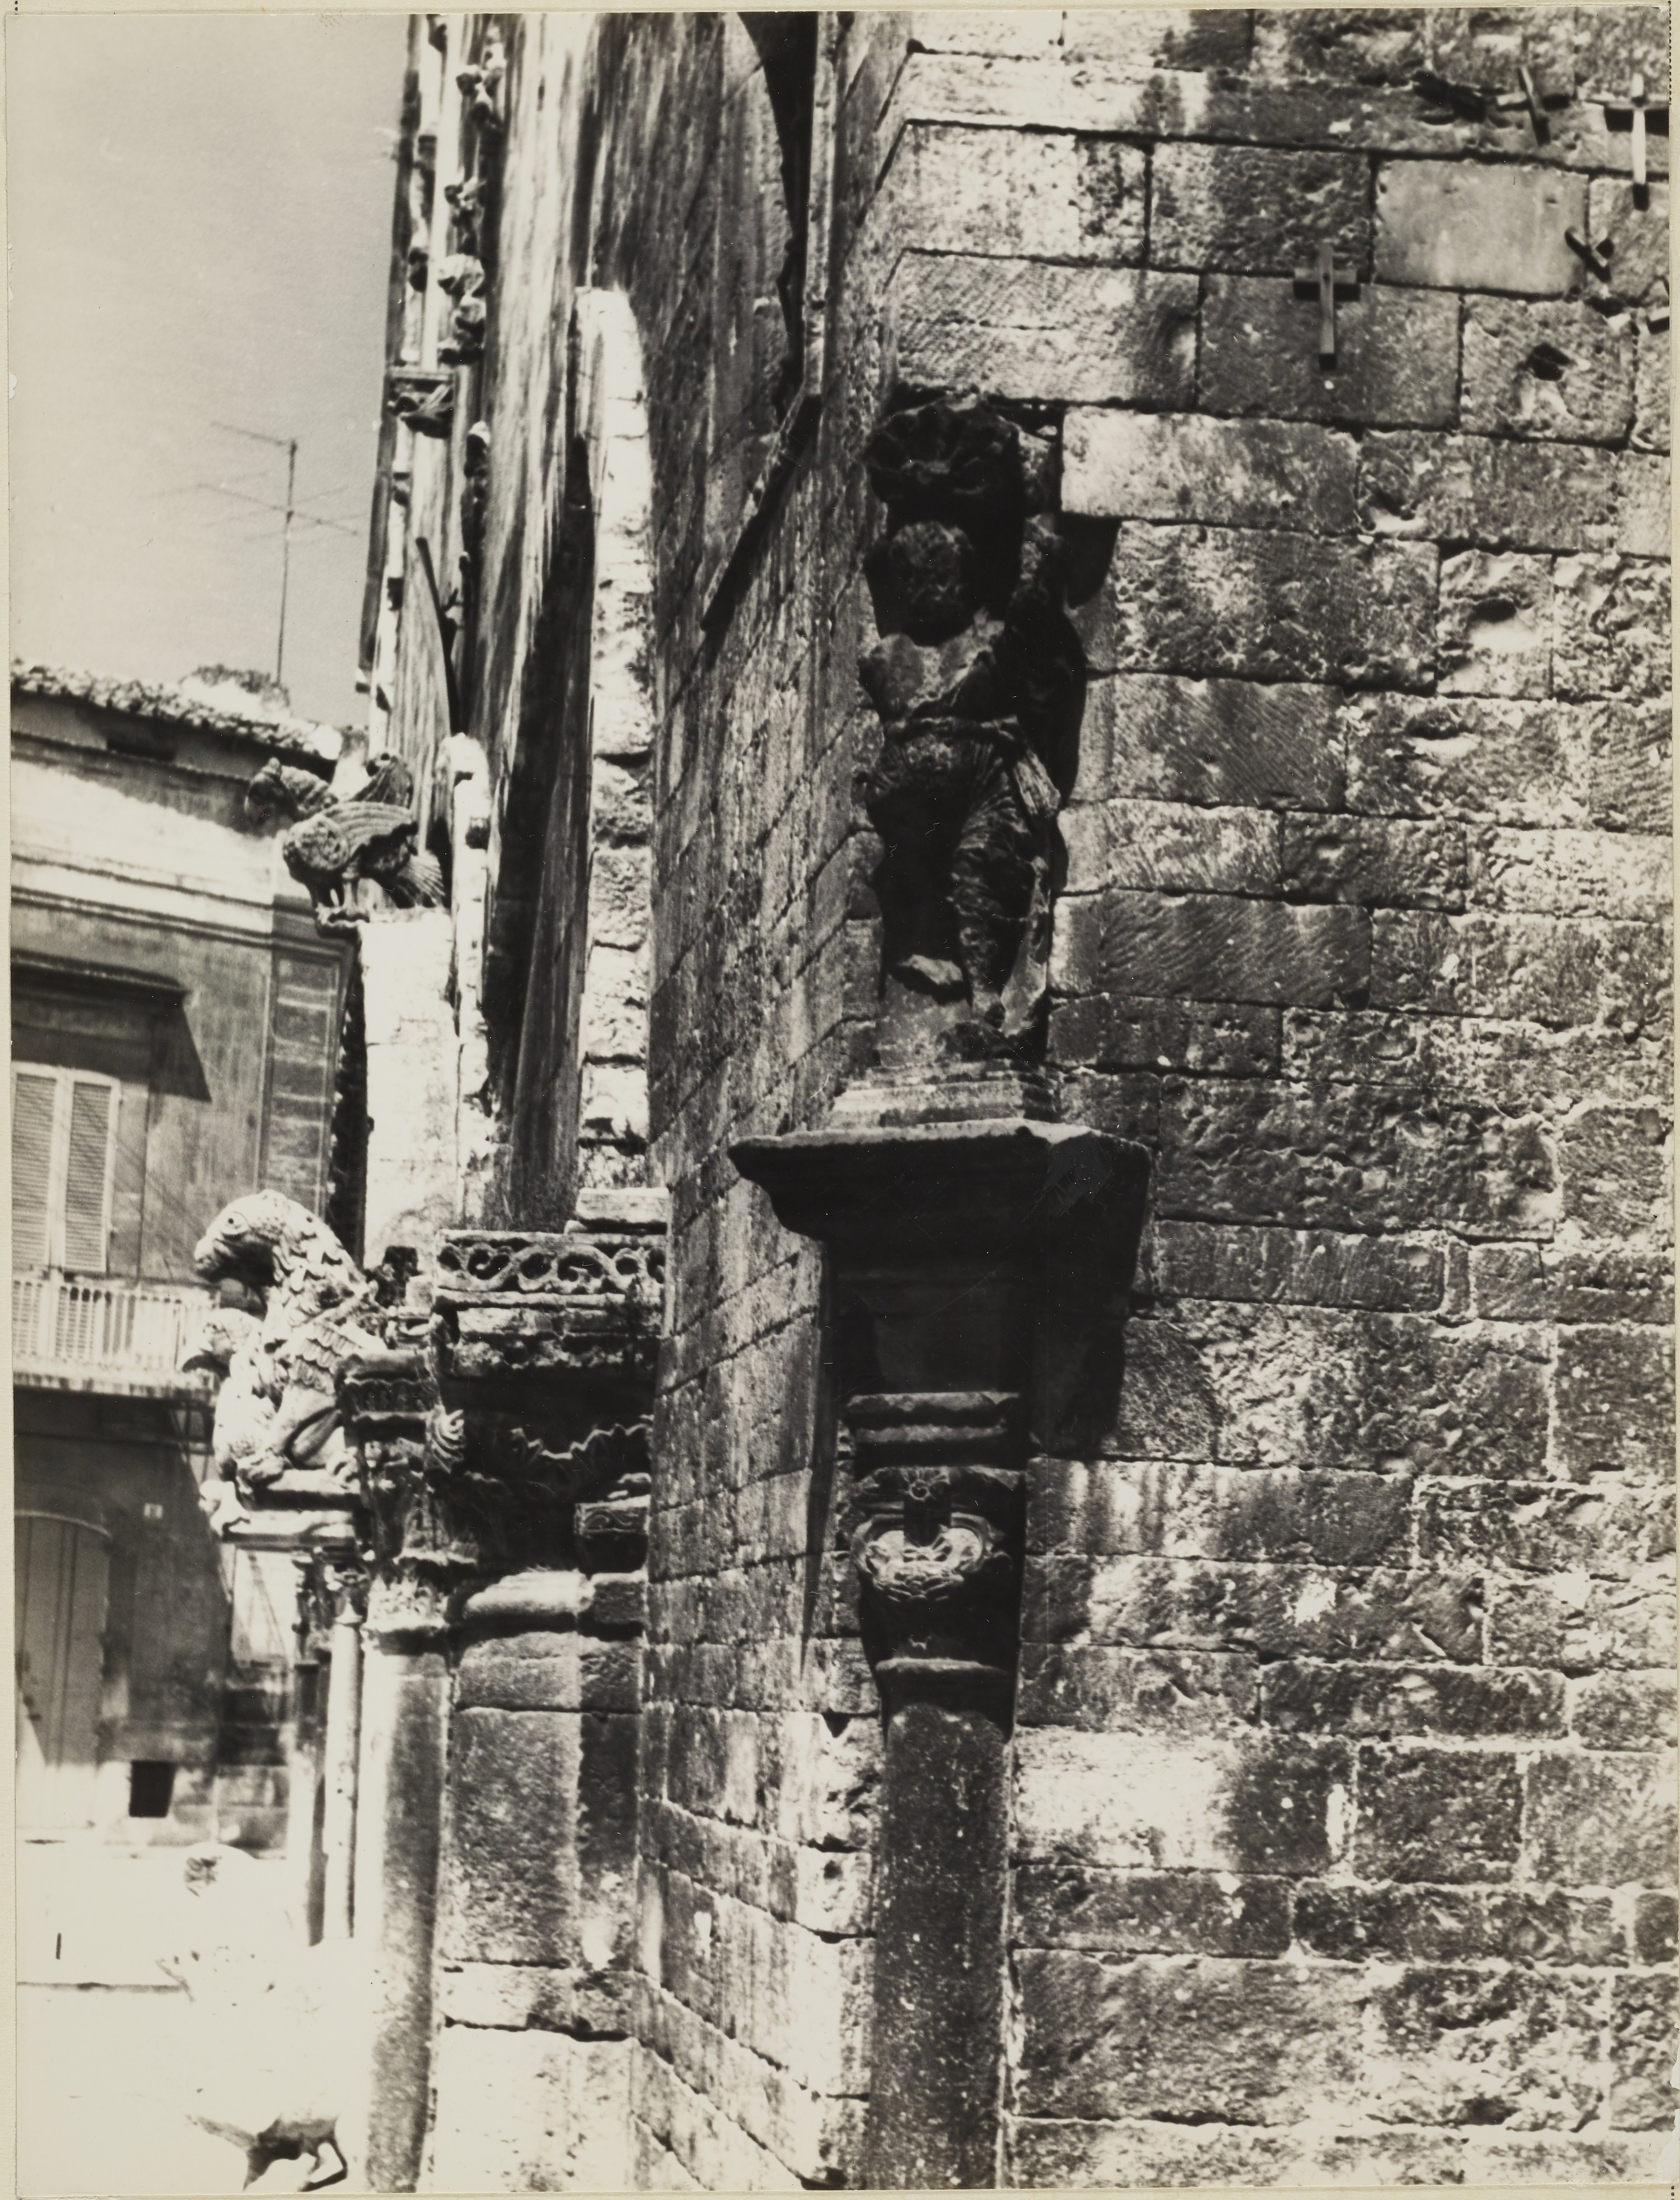 Pagano, Ruvo di Puglia - Cattedrale di S. Maria Assunta, Facciata, spigolo destro, particolare, 1941-1960, gelatina ai sali d'argento/carta, MPI6091615